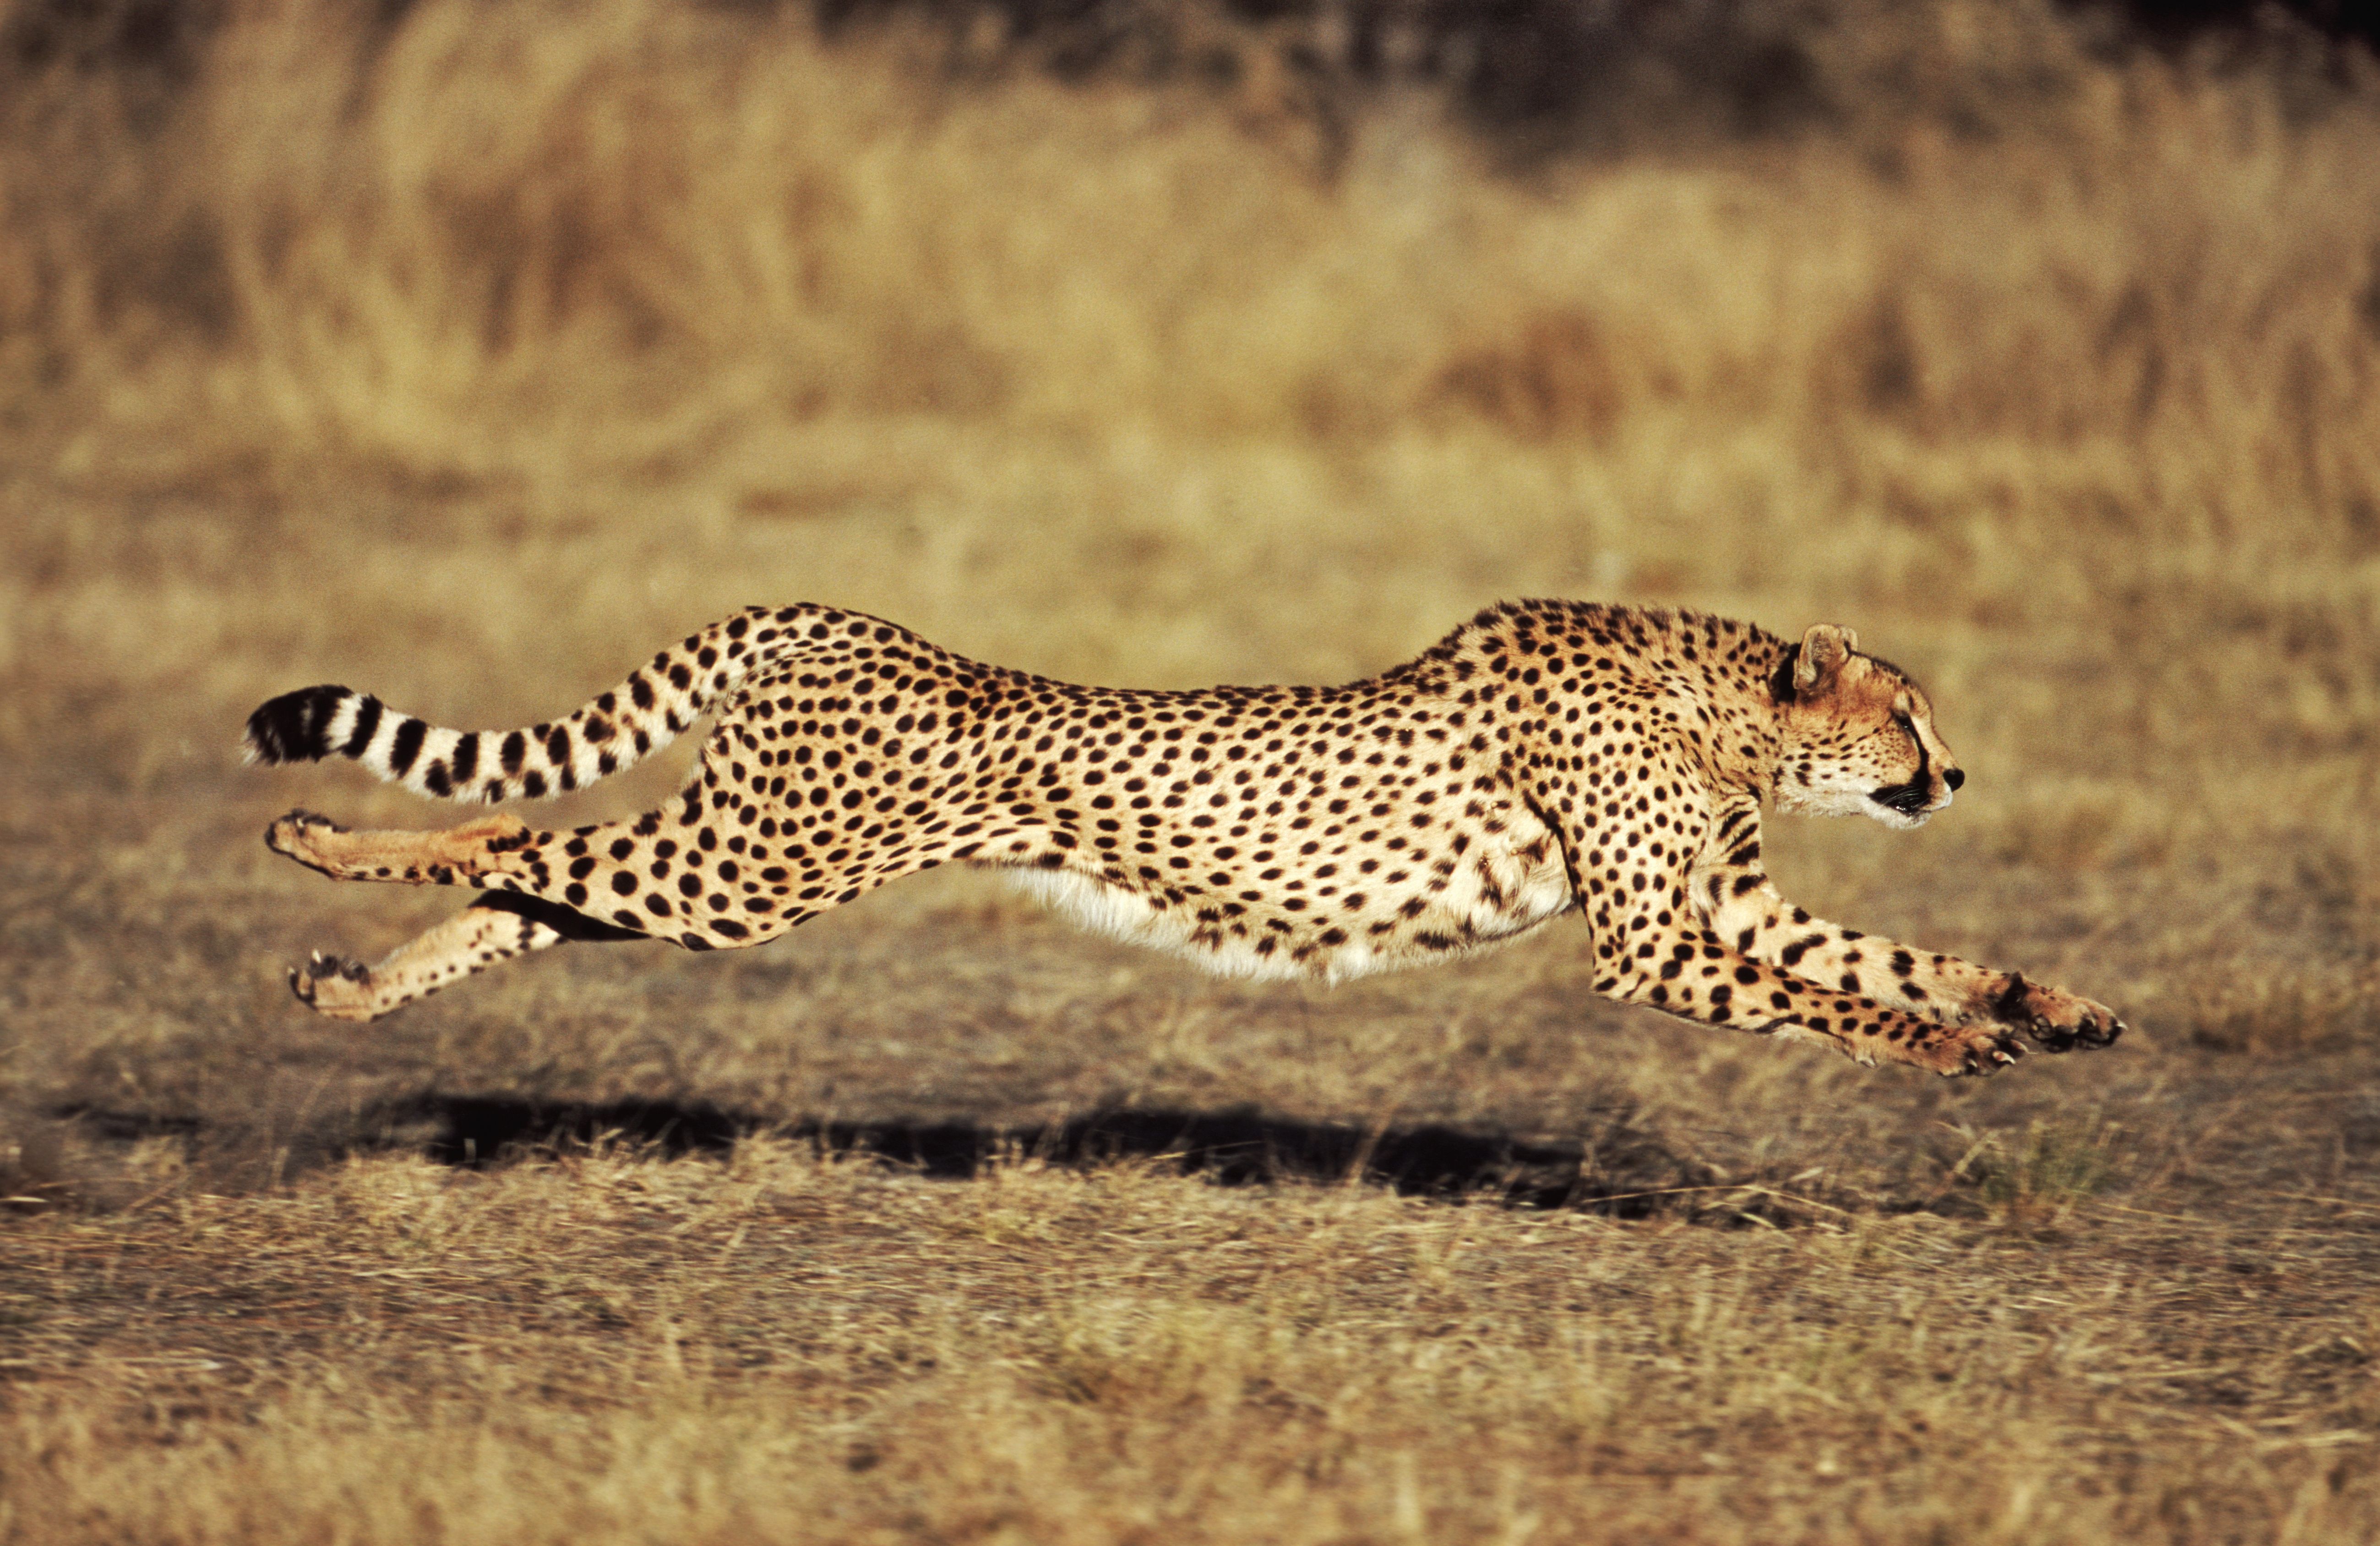 How fast can a Cheetah Run 100 mph?